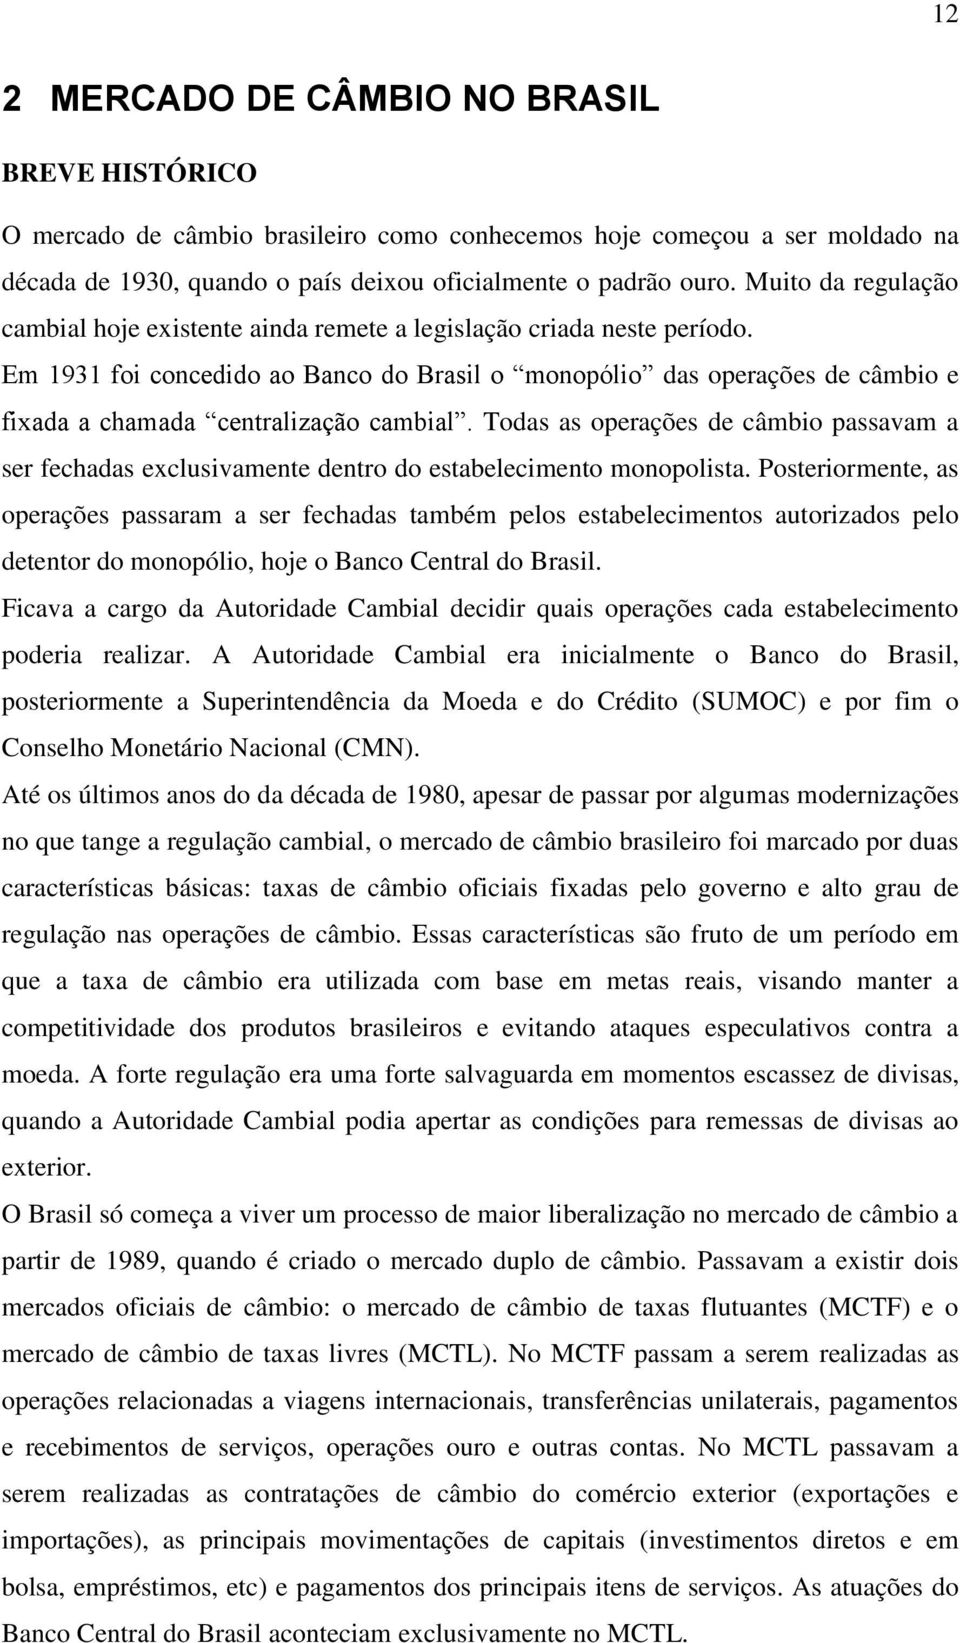 Em 1931 foi concedido ao Banco do Brasil o monopólio das operações de câmbio e fixada a chamada centralização cambial.